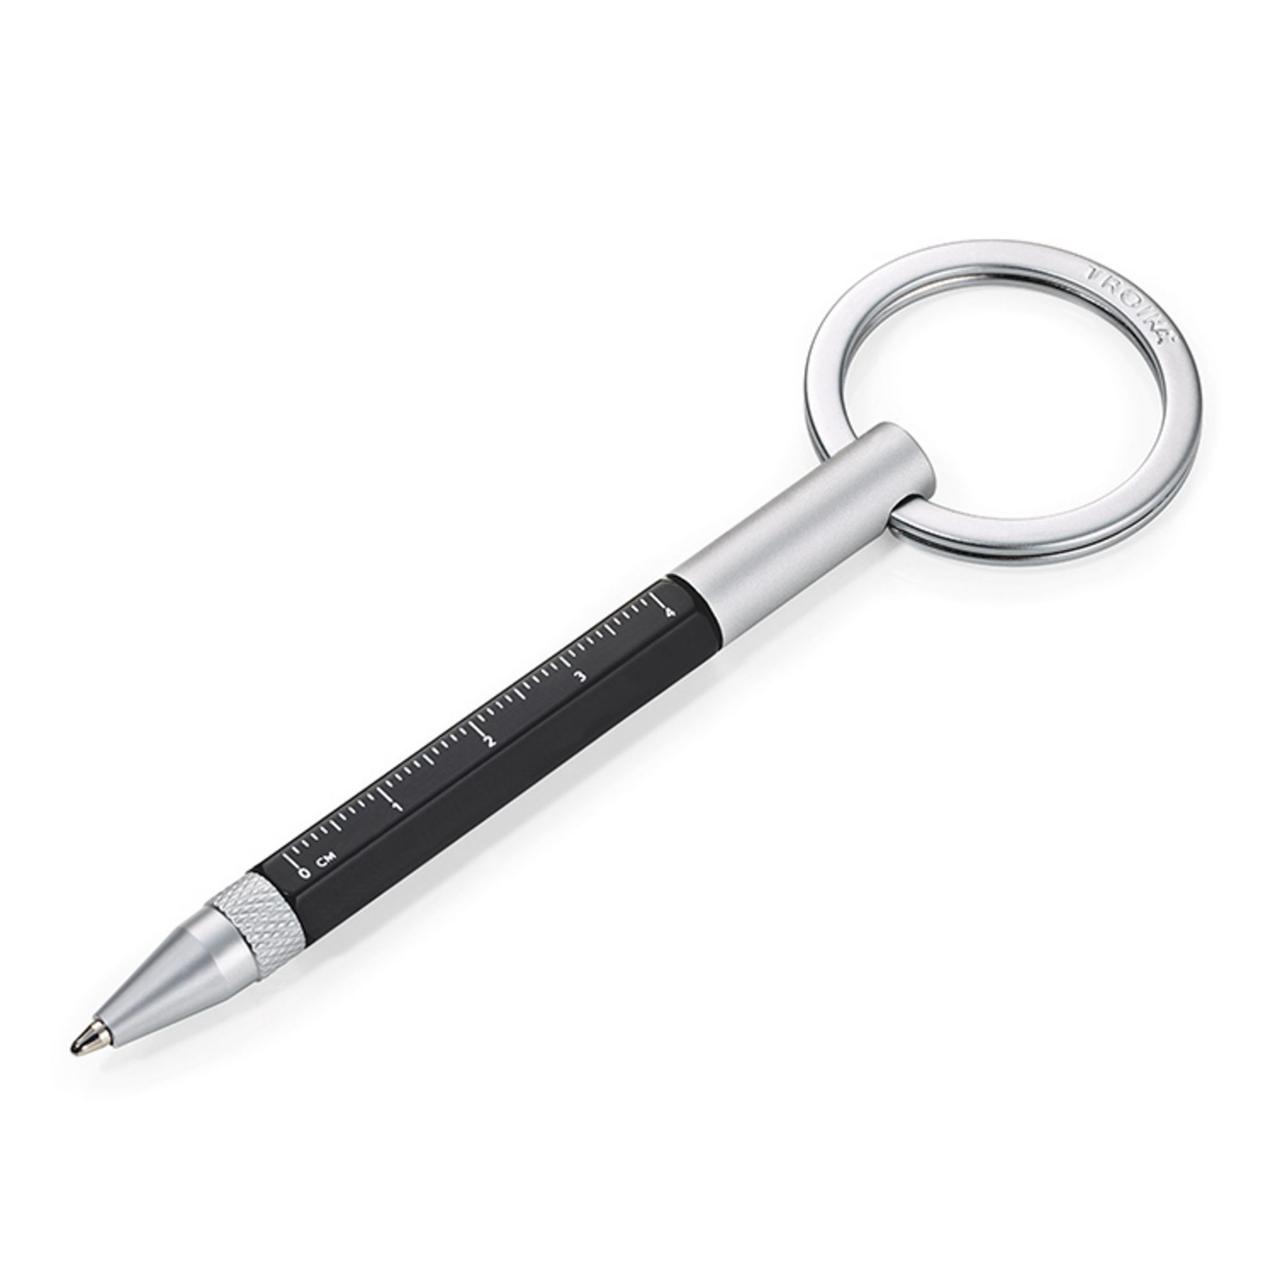 Микро ручка. Ручка шариковая Troika многофункциональная Construction. Ручка Troika pip25bk Black. Брелок в руке. Ручка-брелок маленькая шариковая.